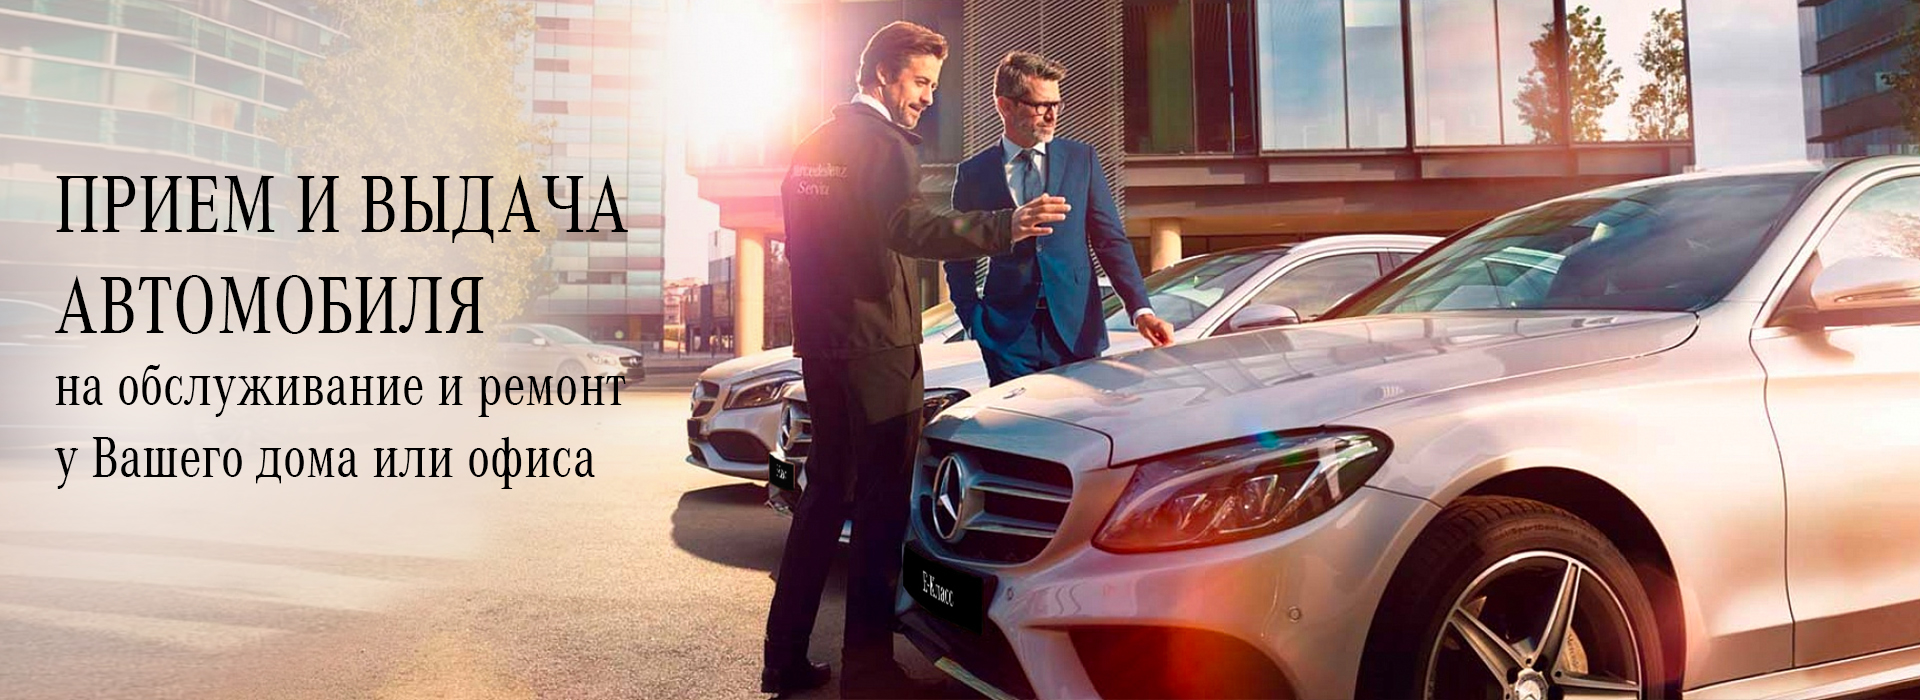 Ремонт автомобилей Mercedes-Benz в Санкт-Петербурге в профильном автосервисе на Оптиков, 4к2